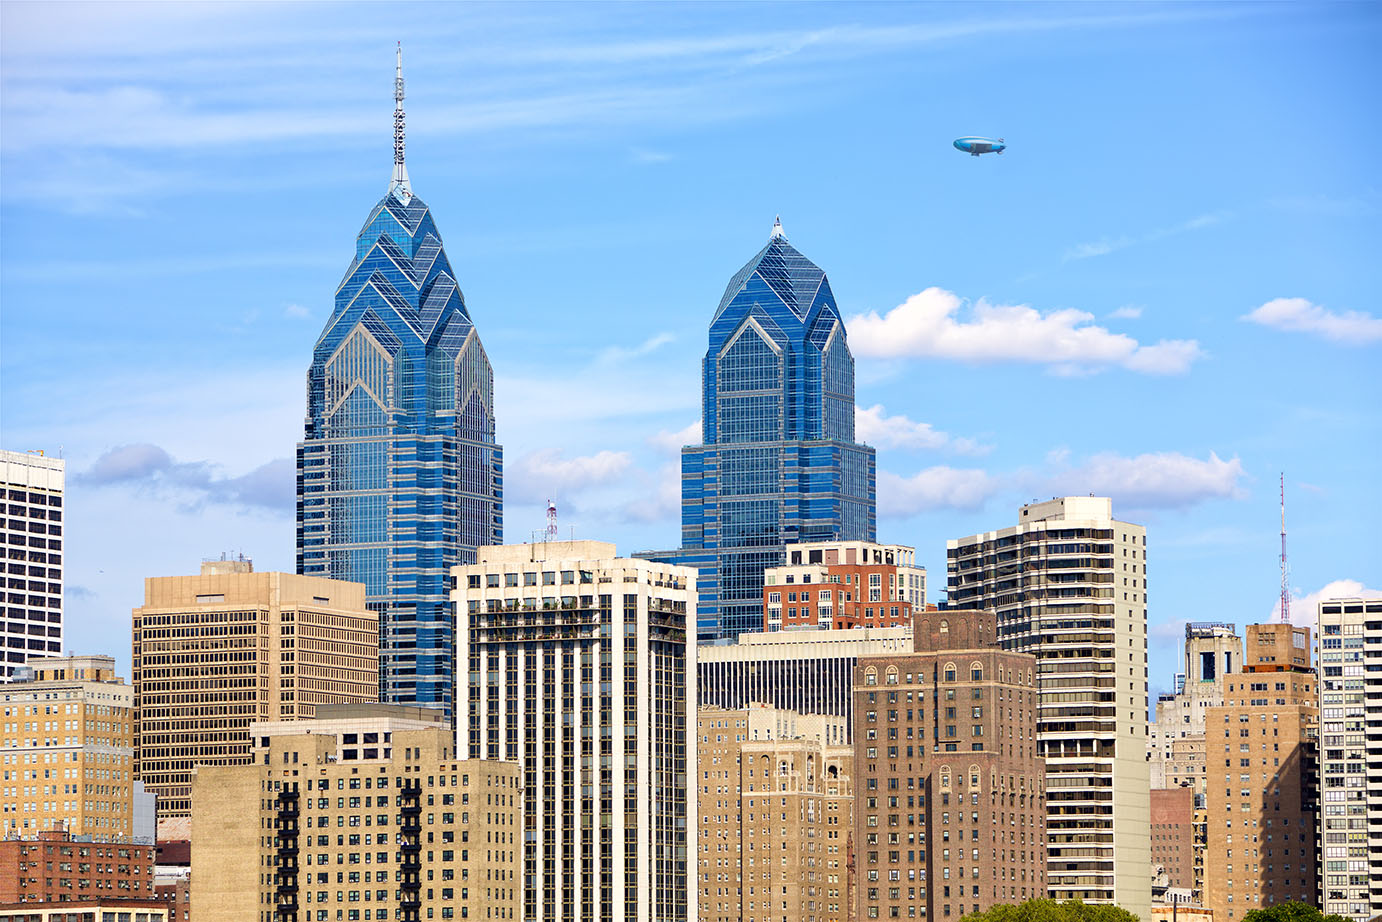 Cityscape of Philadelphia downtown, Pennsylvania, US